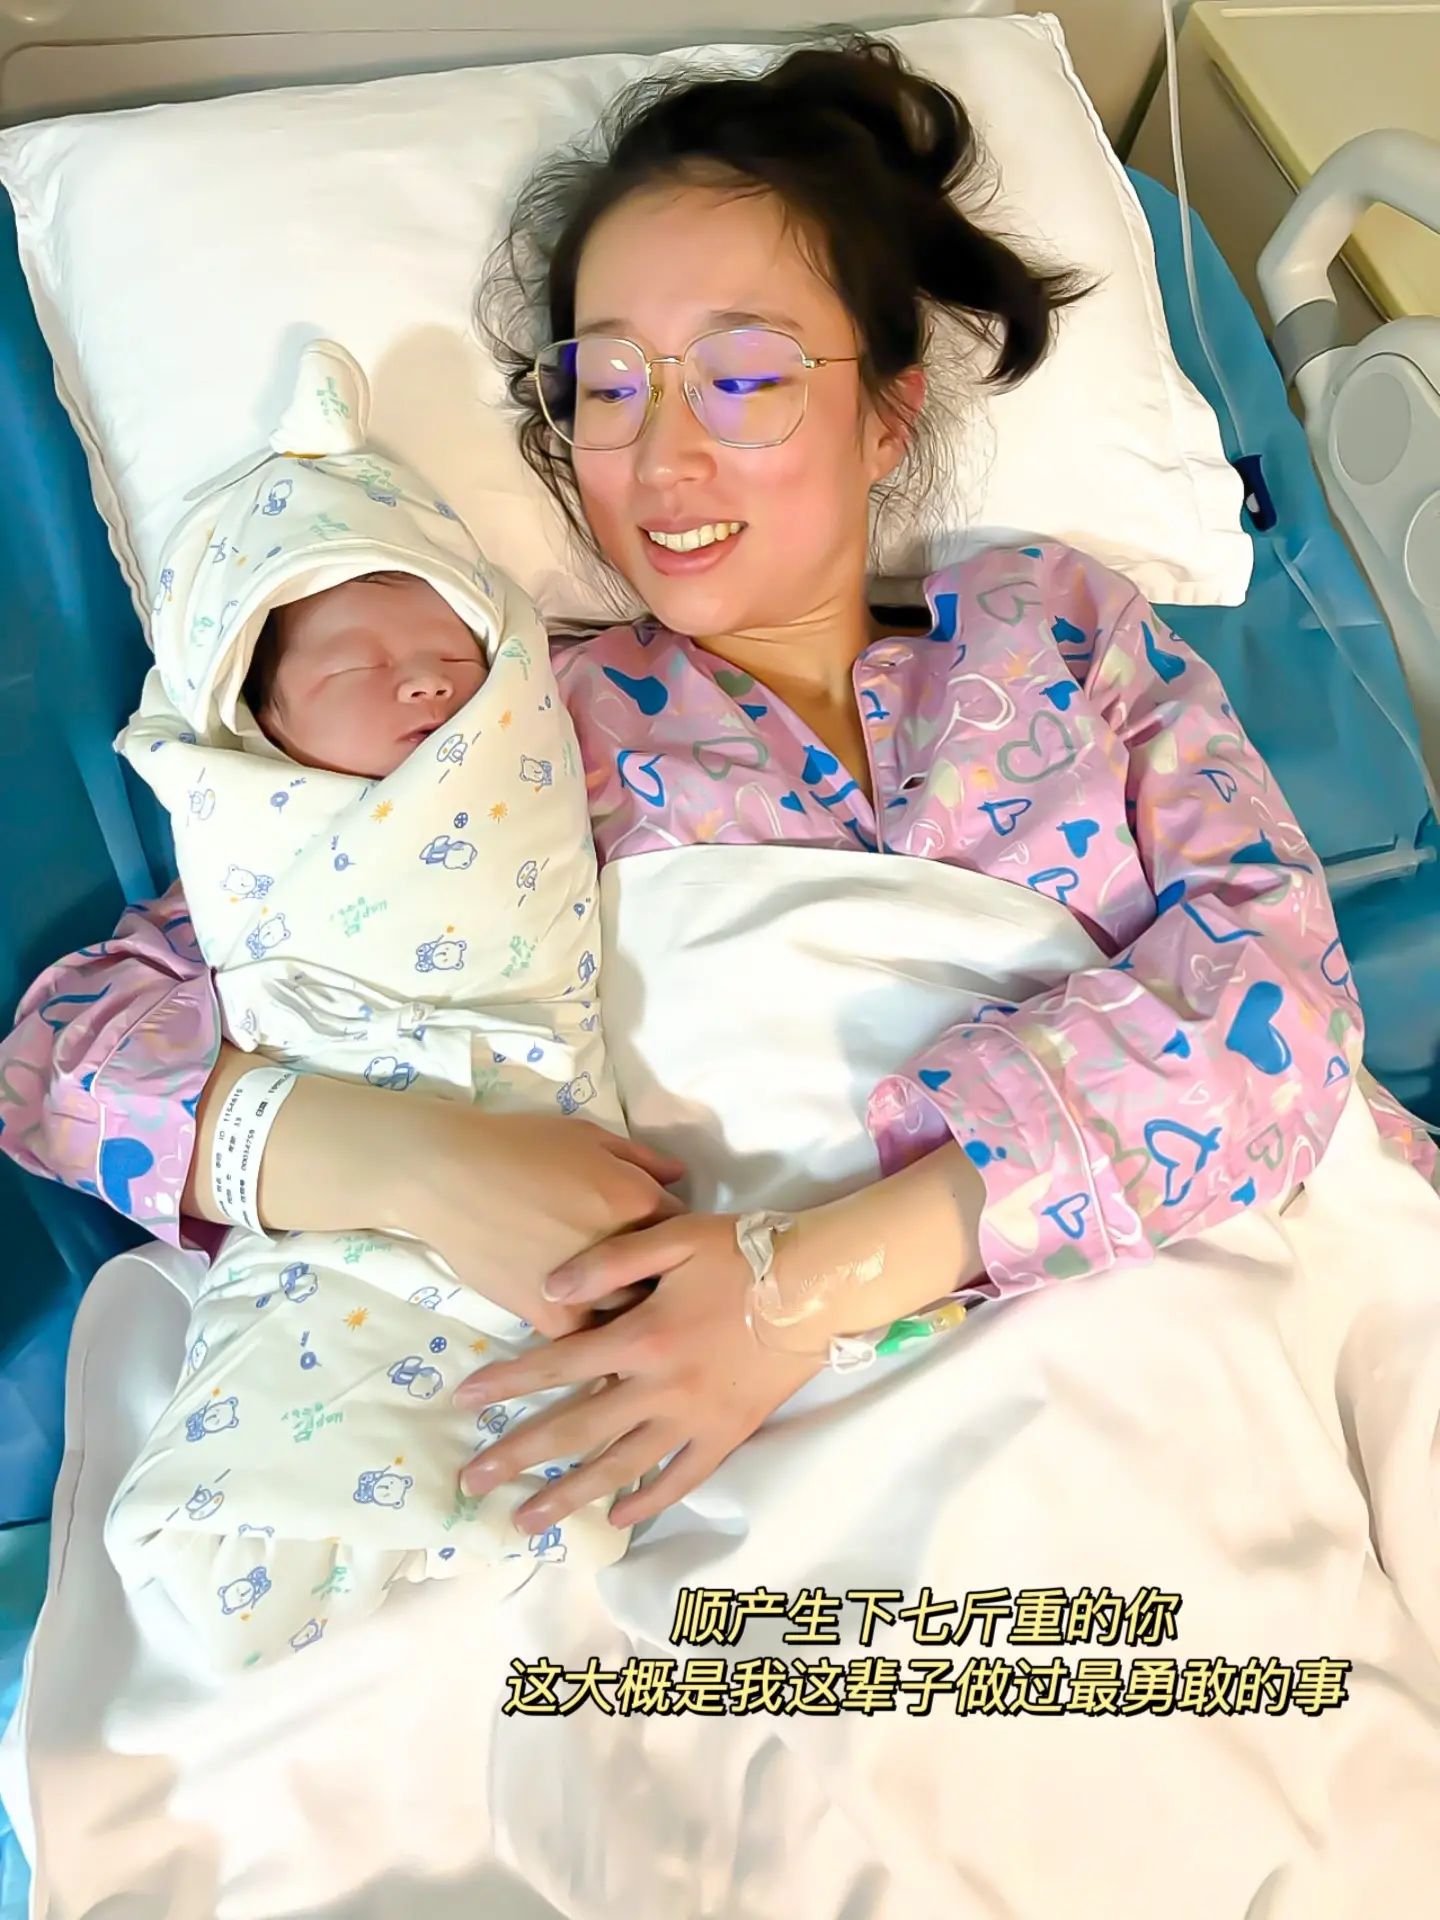 产房直击产妇顺产过程为伟大的妈妈点赞-母婴亲子视频-搜狐视频